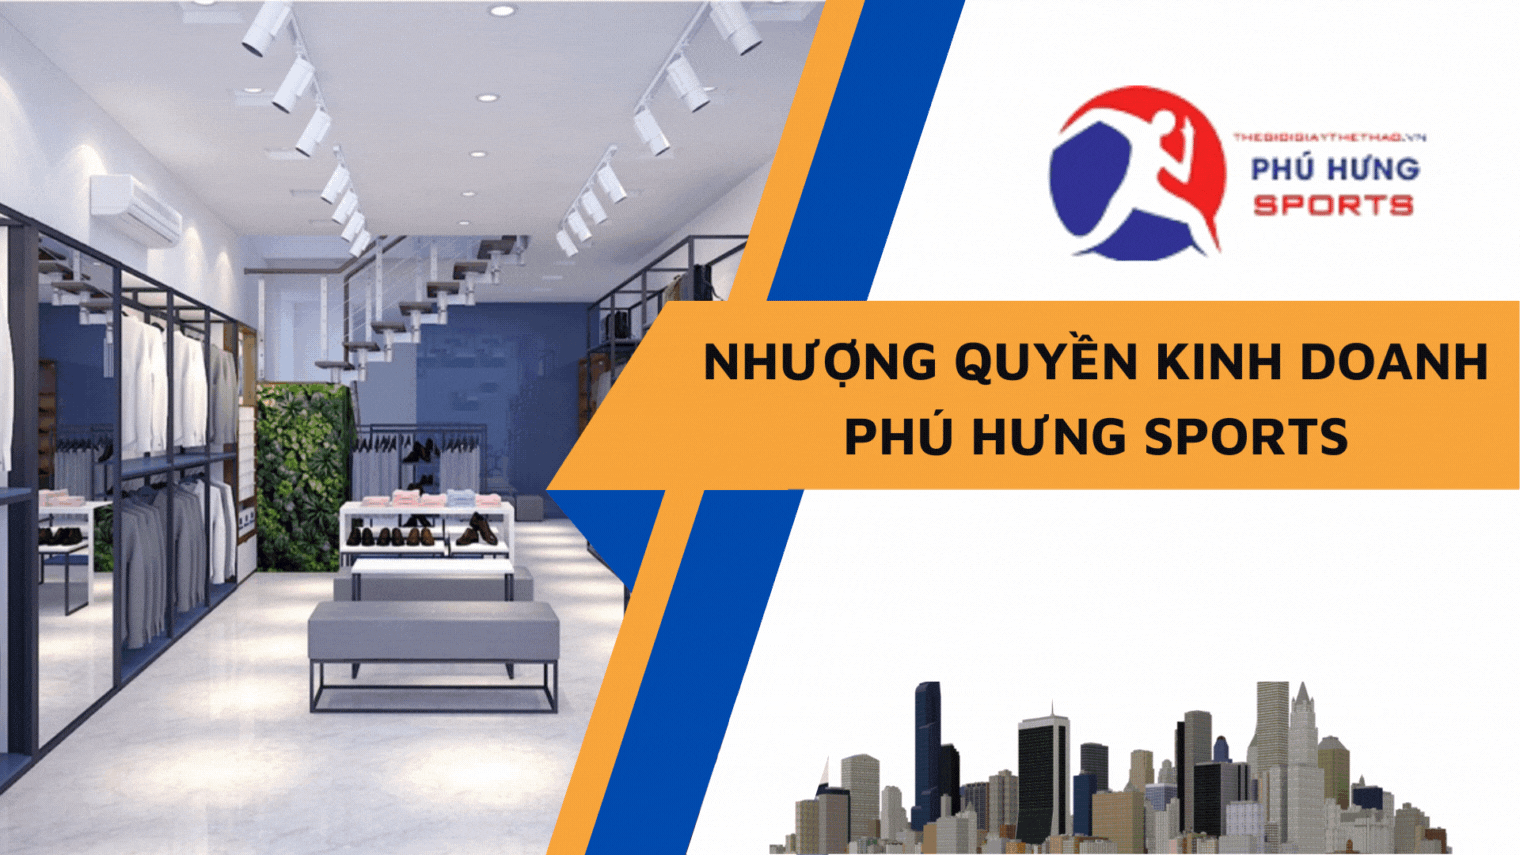 Phú Hưng Sport - Nhượng quyền kinh doanh